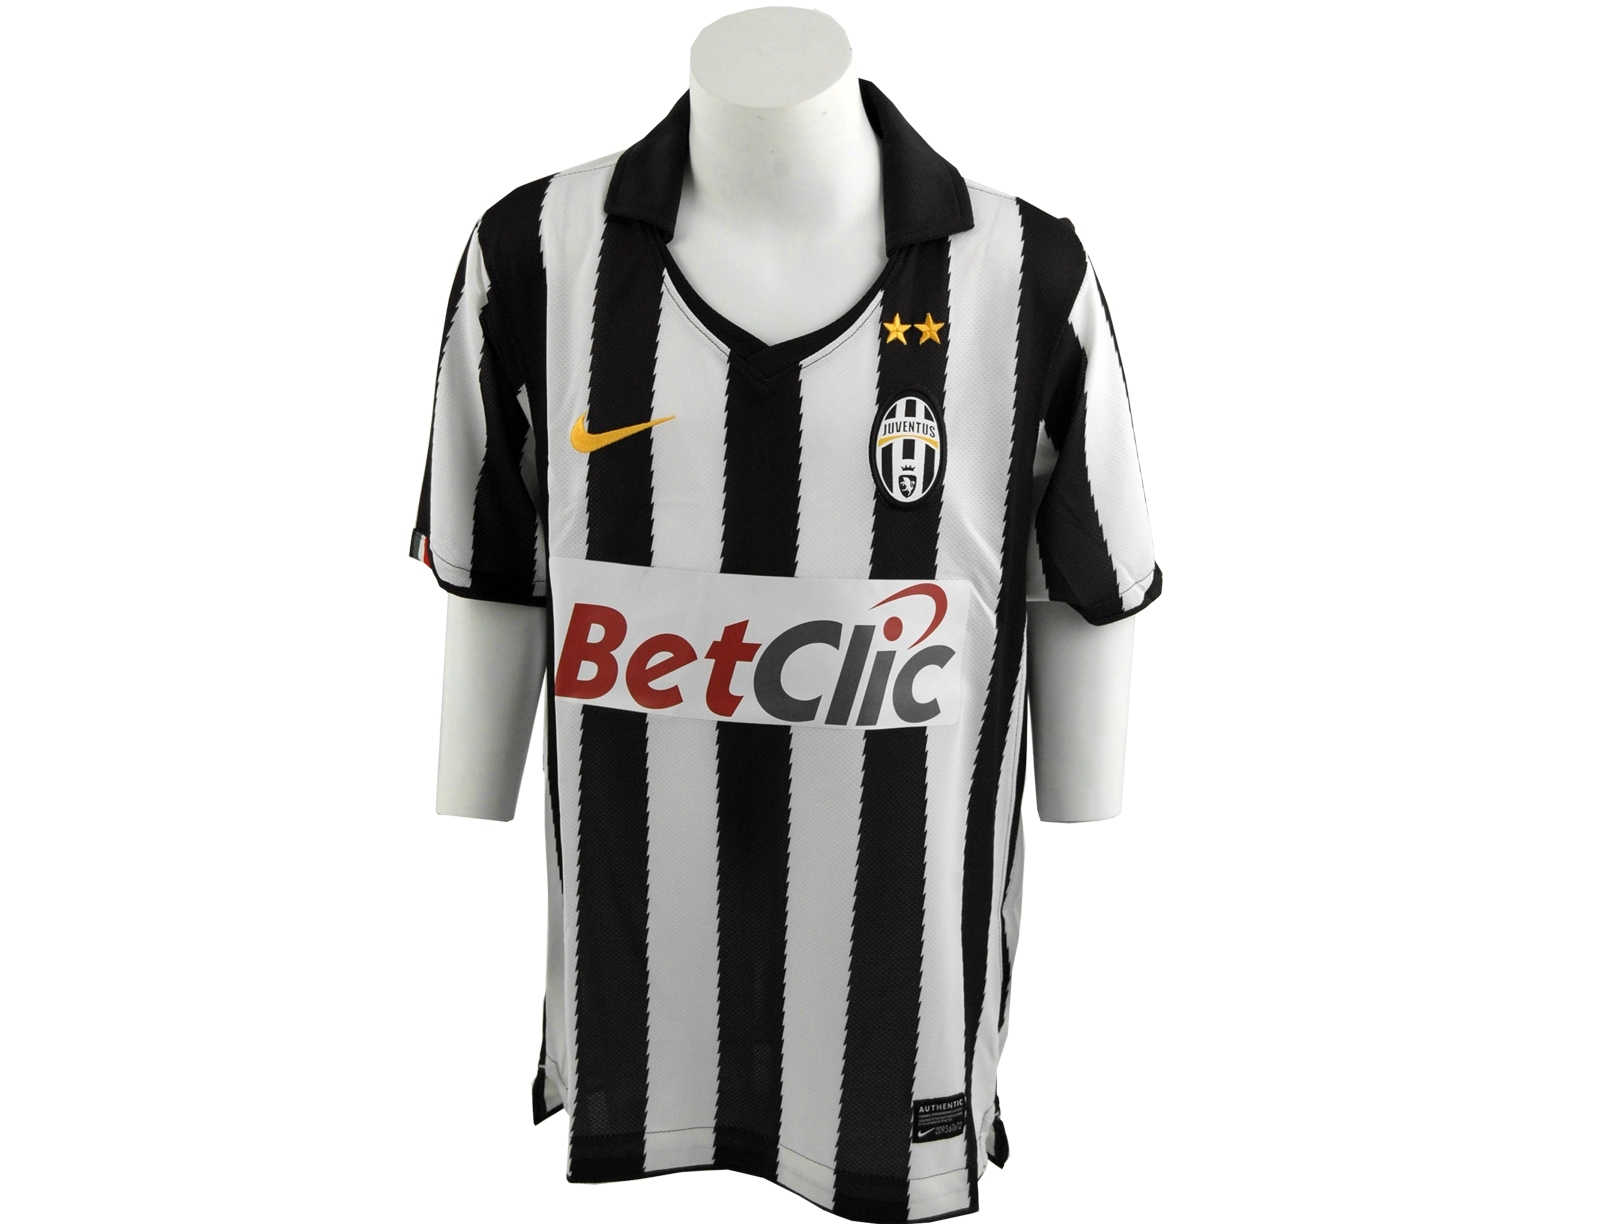 Avantisport - Nike - Juventus Boys Short Sleeve Home Jersey - Nike Juventus